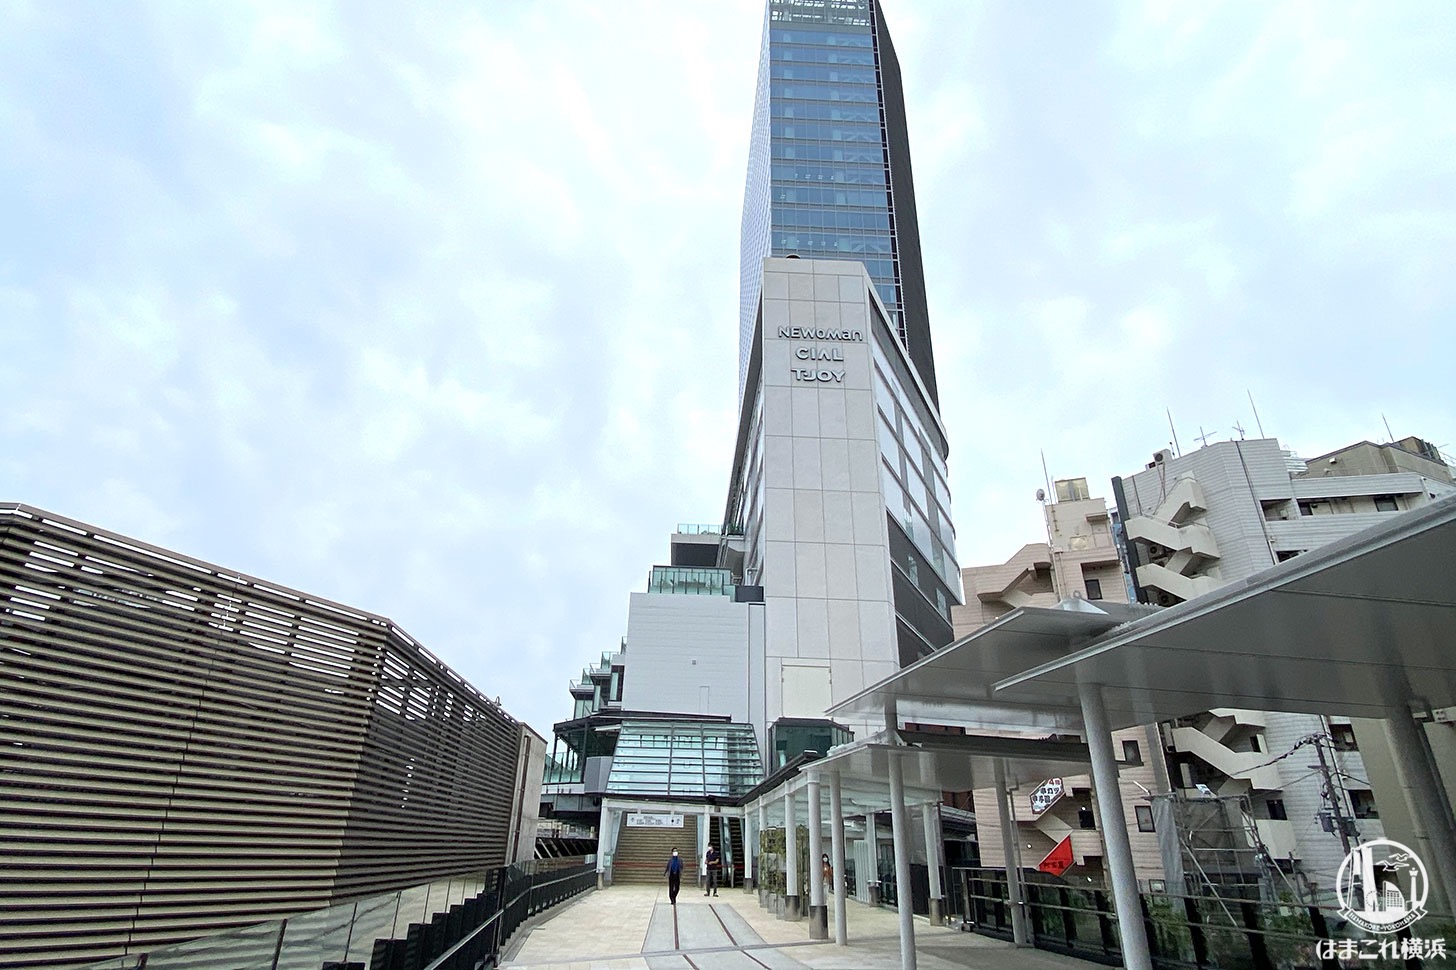 横浜駅 はまレールウォーク 開通 Jr横浜タワーとjr横浜鶴屋町ビルを繋ぐ歩行者デッキ はまこれ横浜